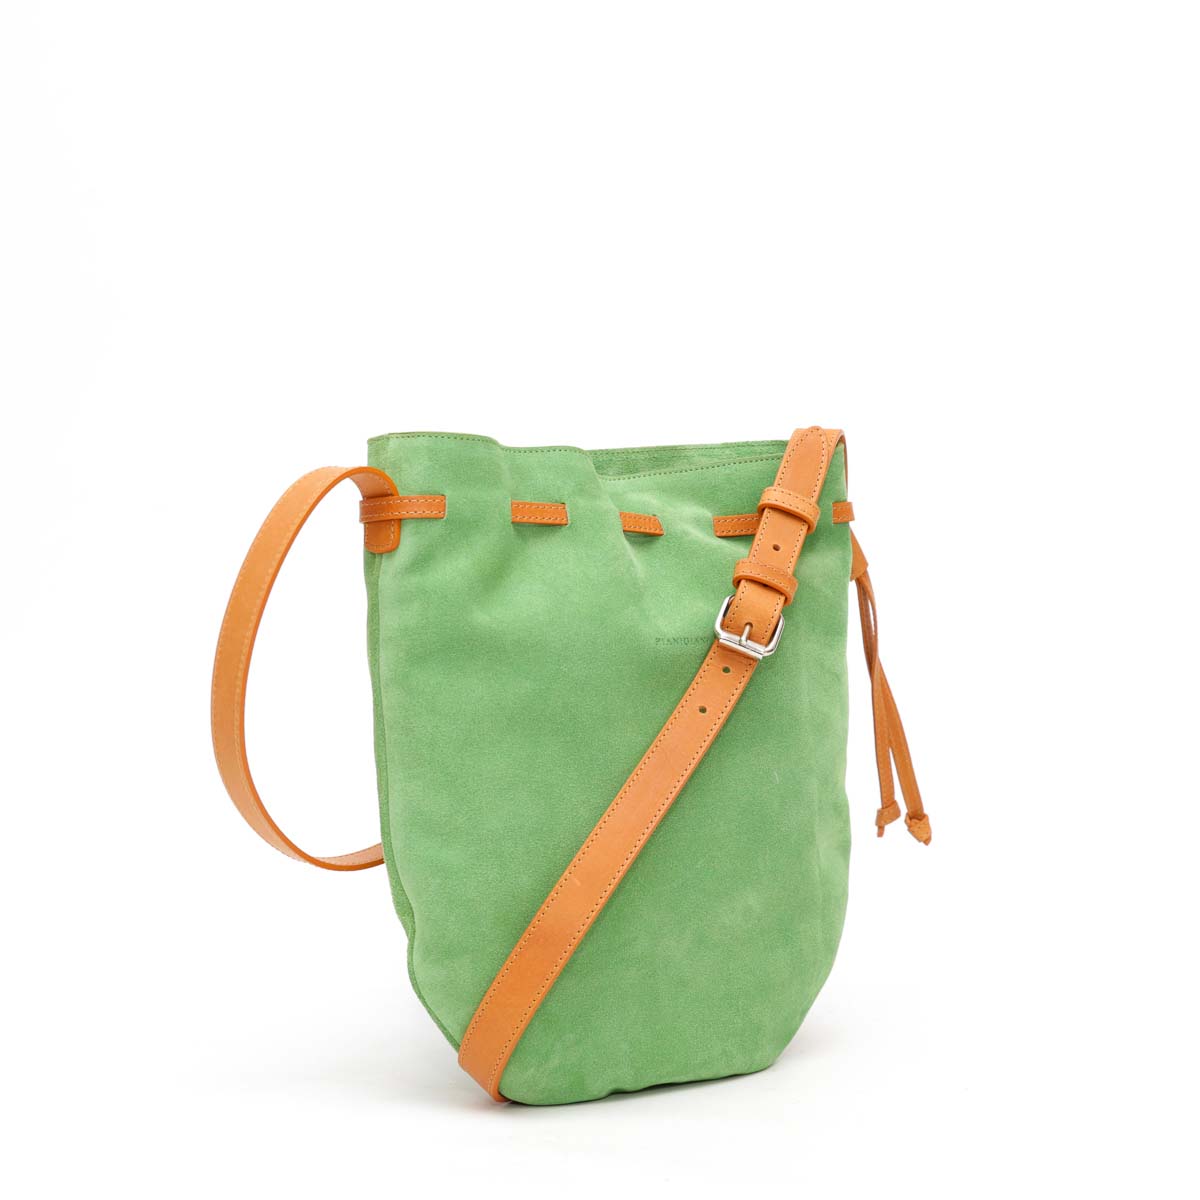 Free, borsa a tracolla in pelle scamosciata verde con cordino di chiusura in cuoio. Prodotta da Pianigiani.